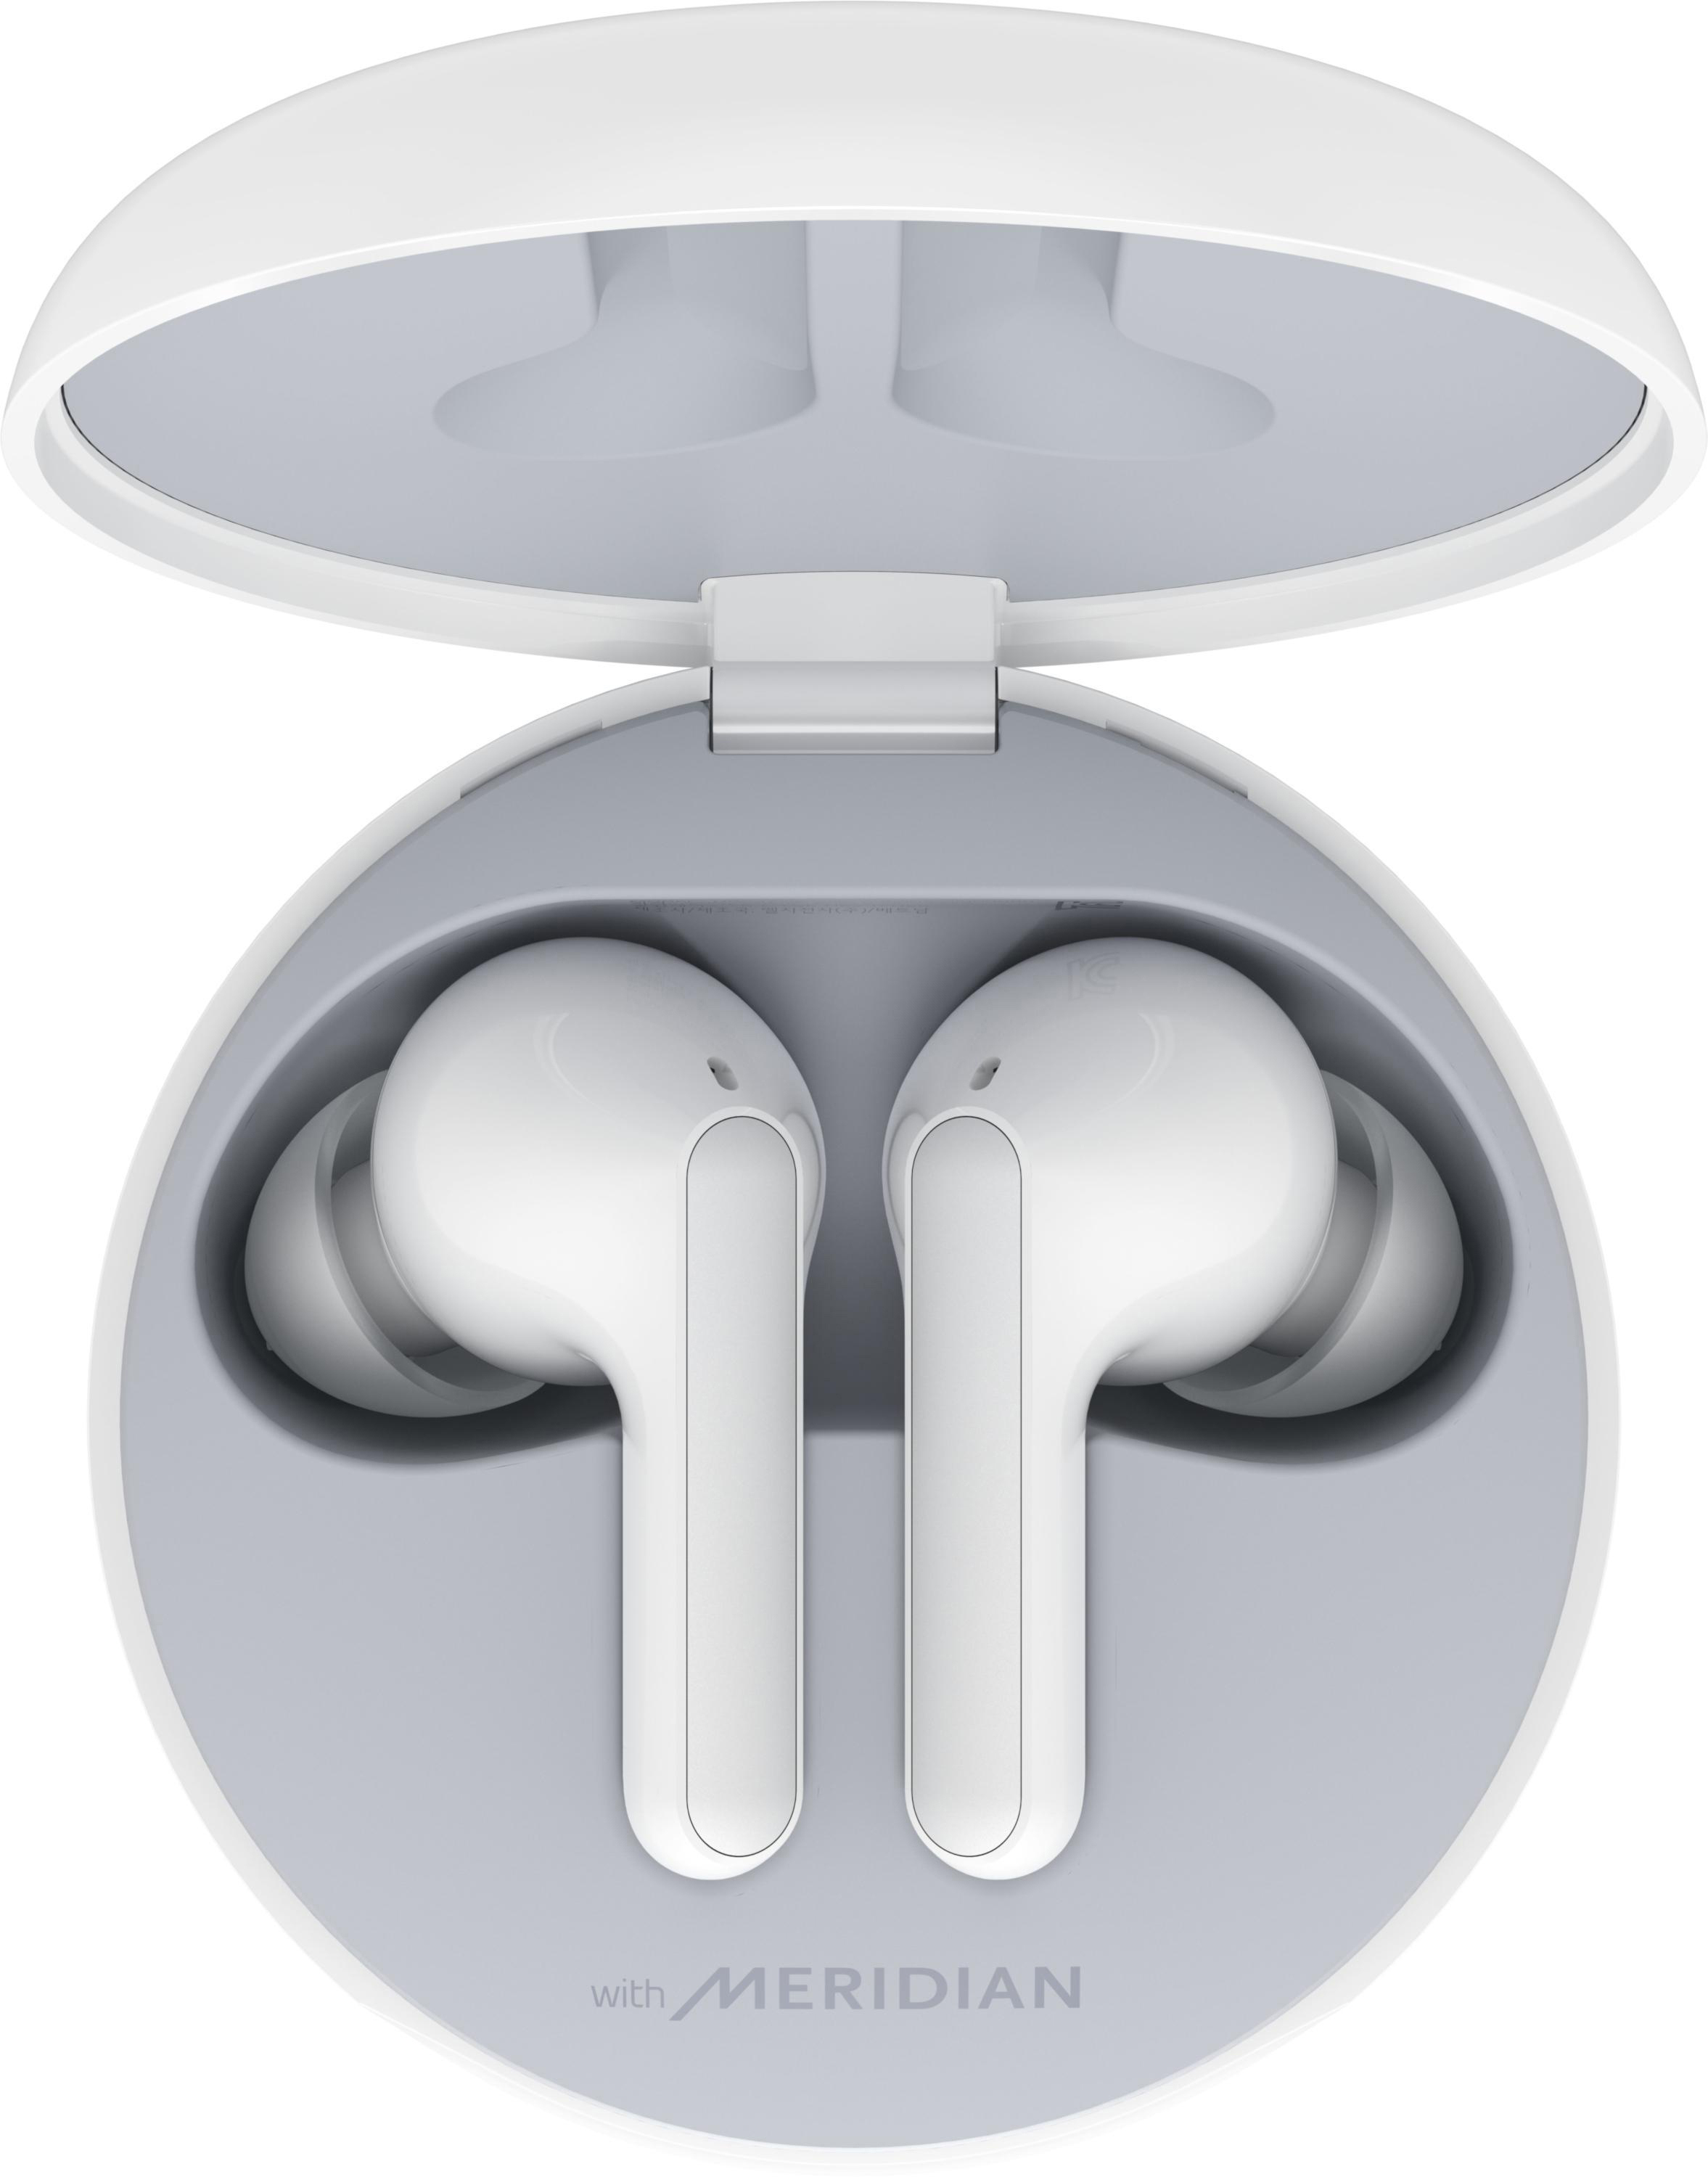 LG HBS-FN4.APL2S, In-ear Weiß/Sour Kopfhörer Bluetooth Lemon